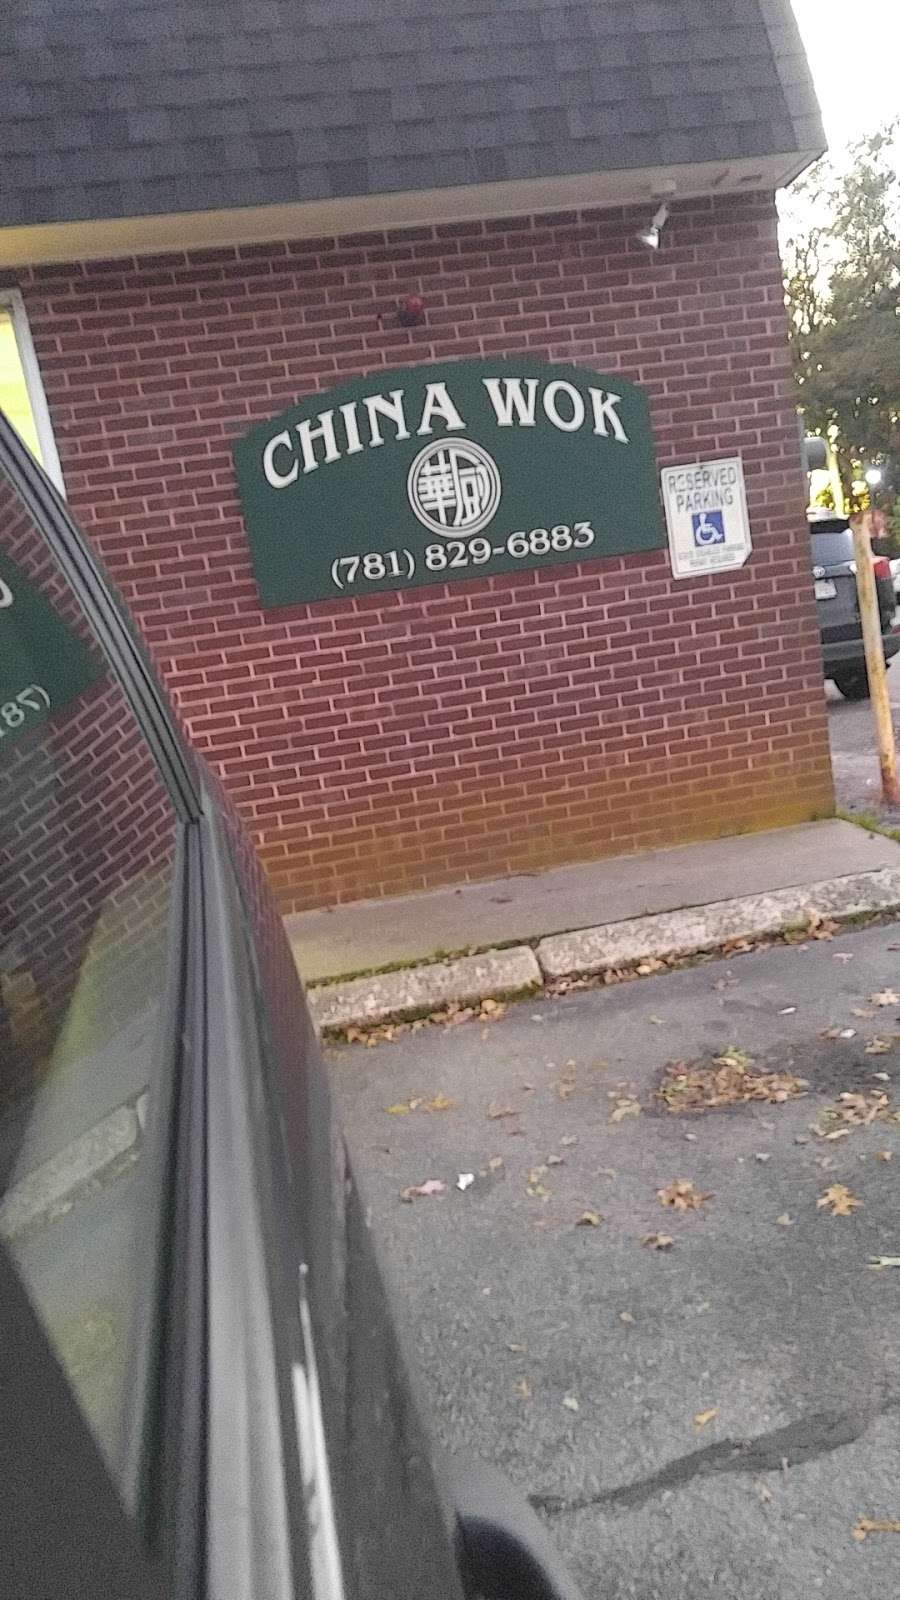 China Wok Chinese Restaurant | 99 Washington St, Pembroke, MA 02359 | Phone: (781) 829-6883